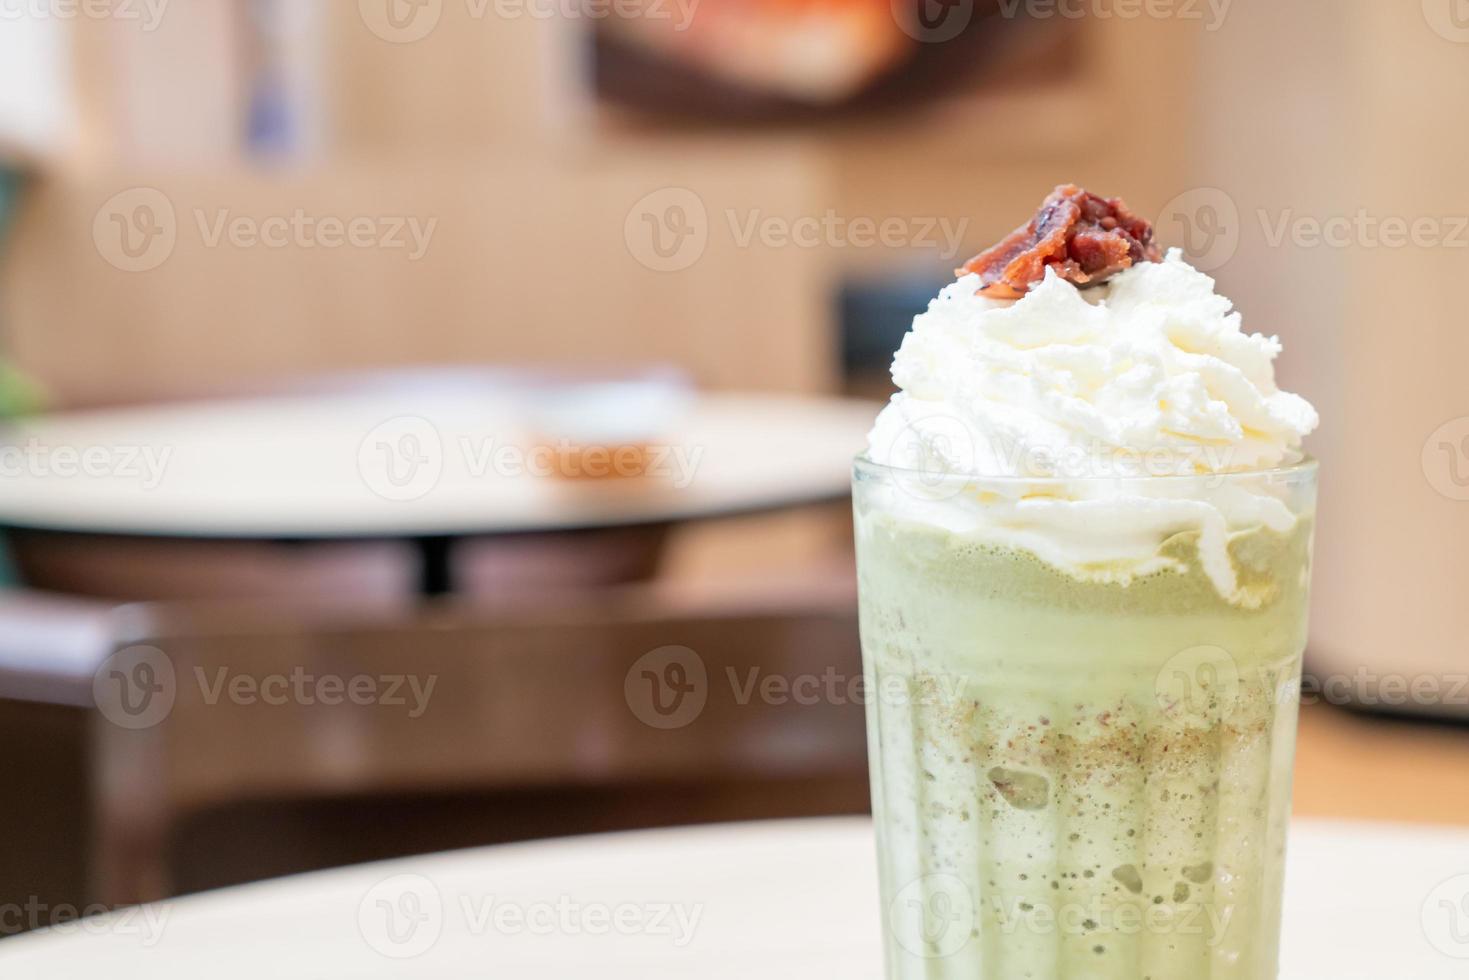 tè verde matcha latte miscelato con panna montata e fagioli rossi nella caffetteria bar e ristorante foto